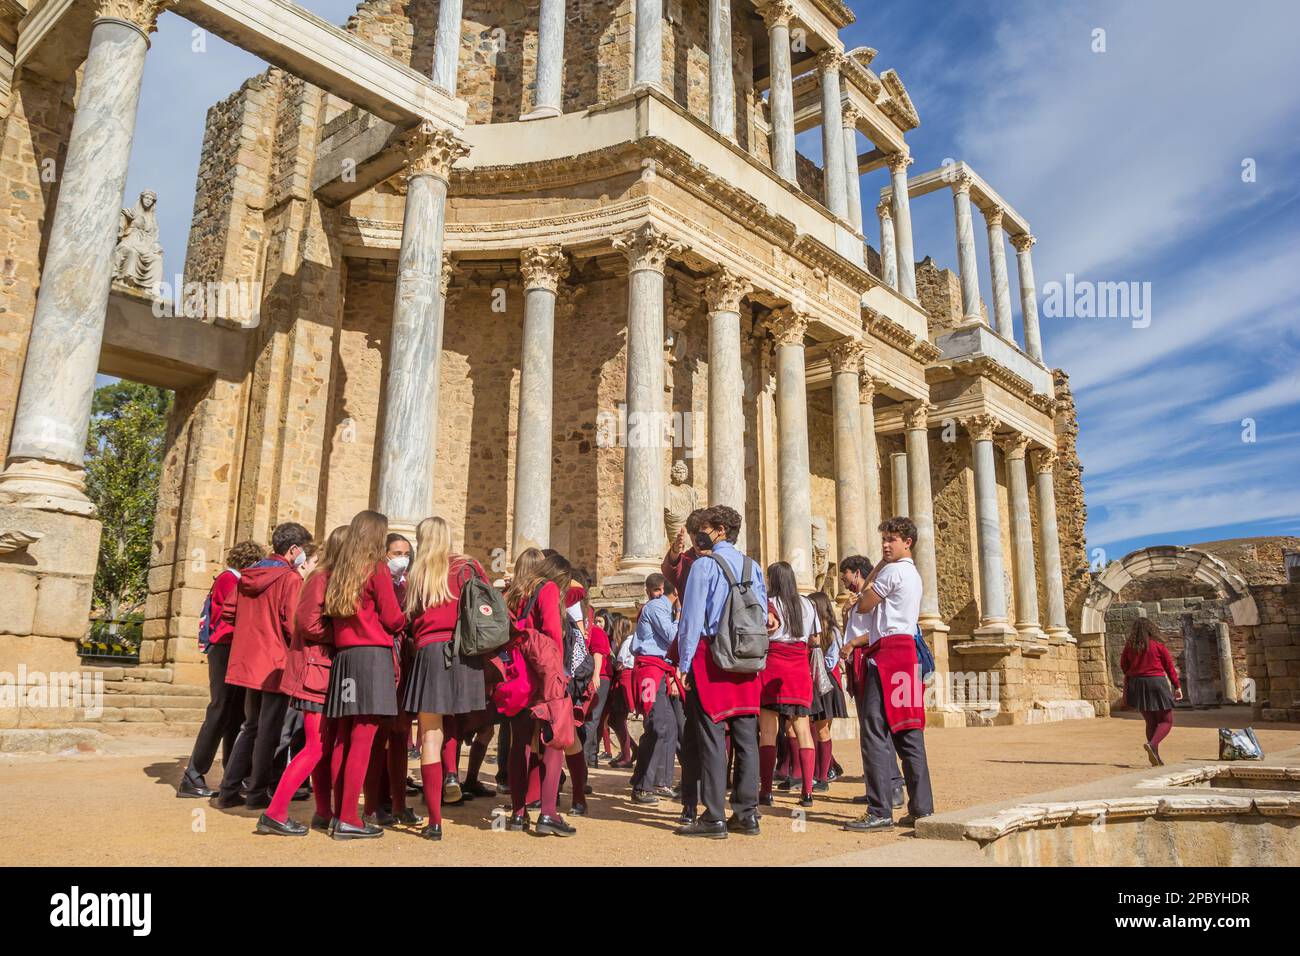 Schulklasse in Uniform im historischen römischen Theater von Merida, Spanien Stockfoto